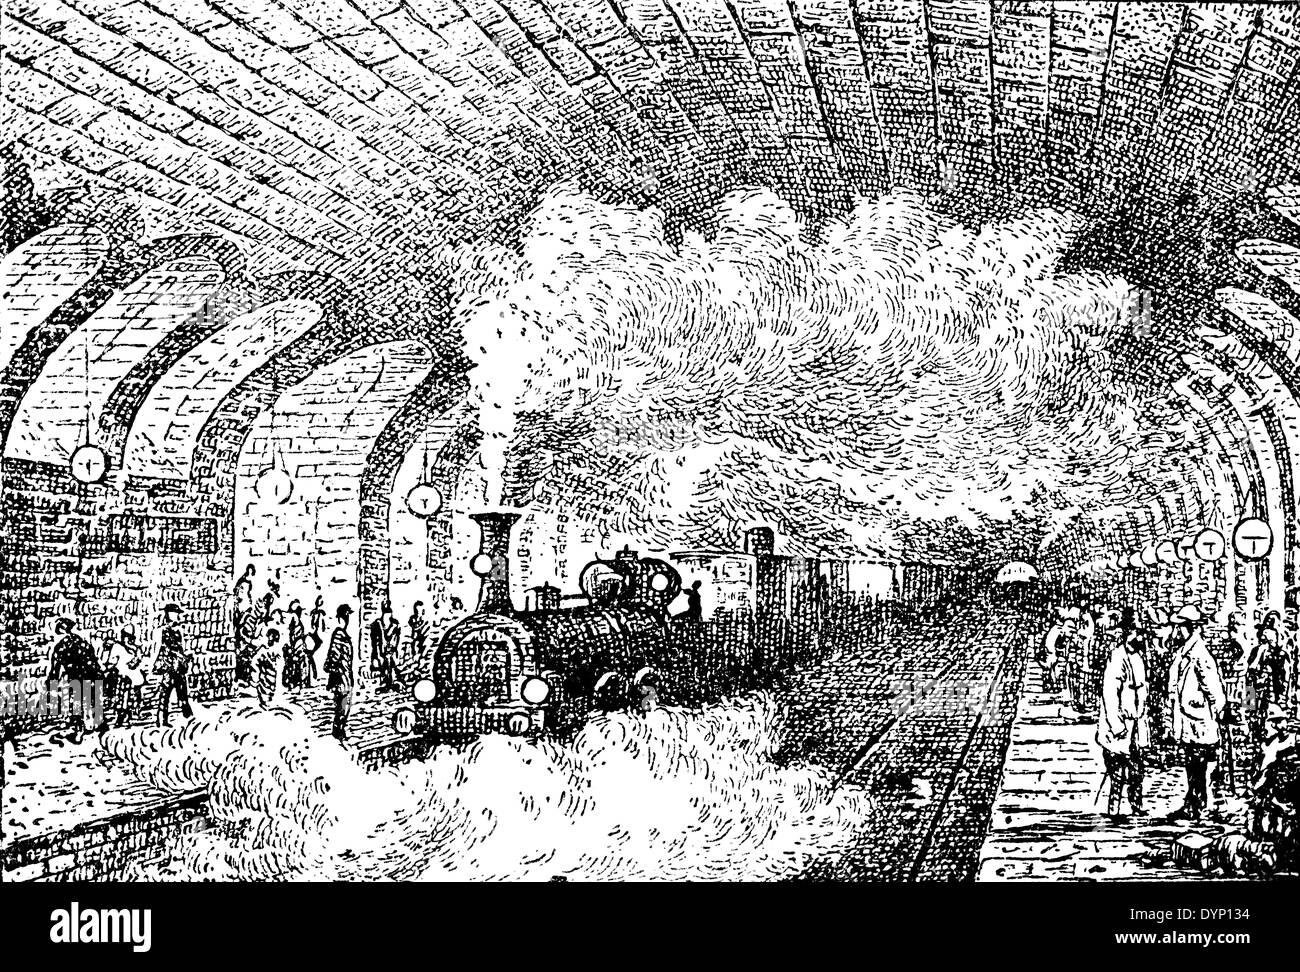 London underground steam фото 96